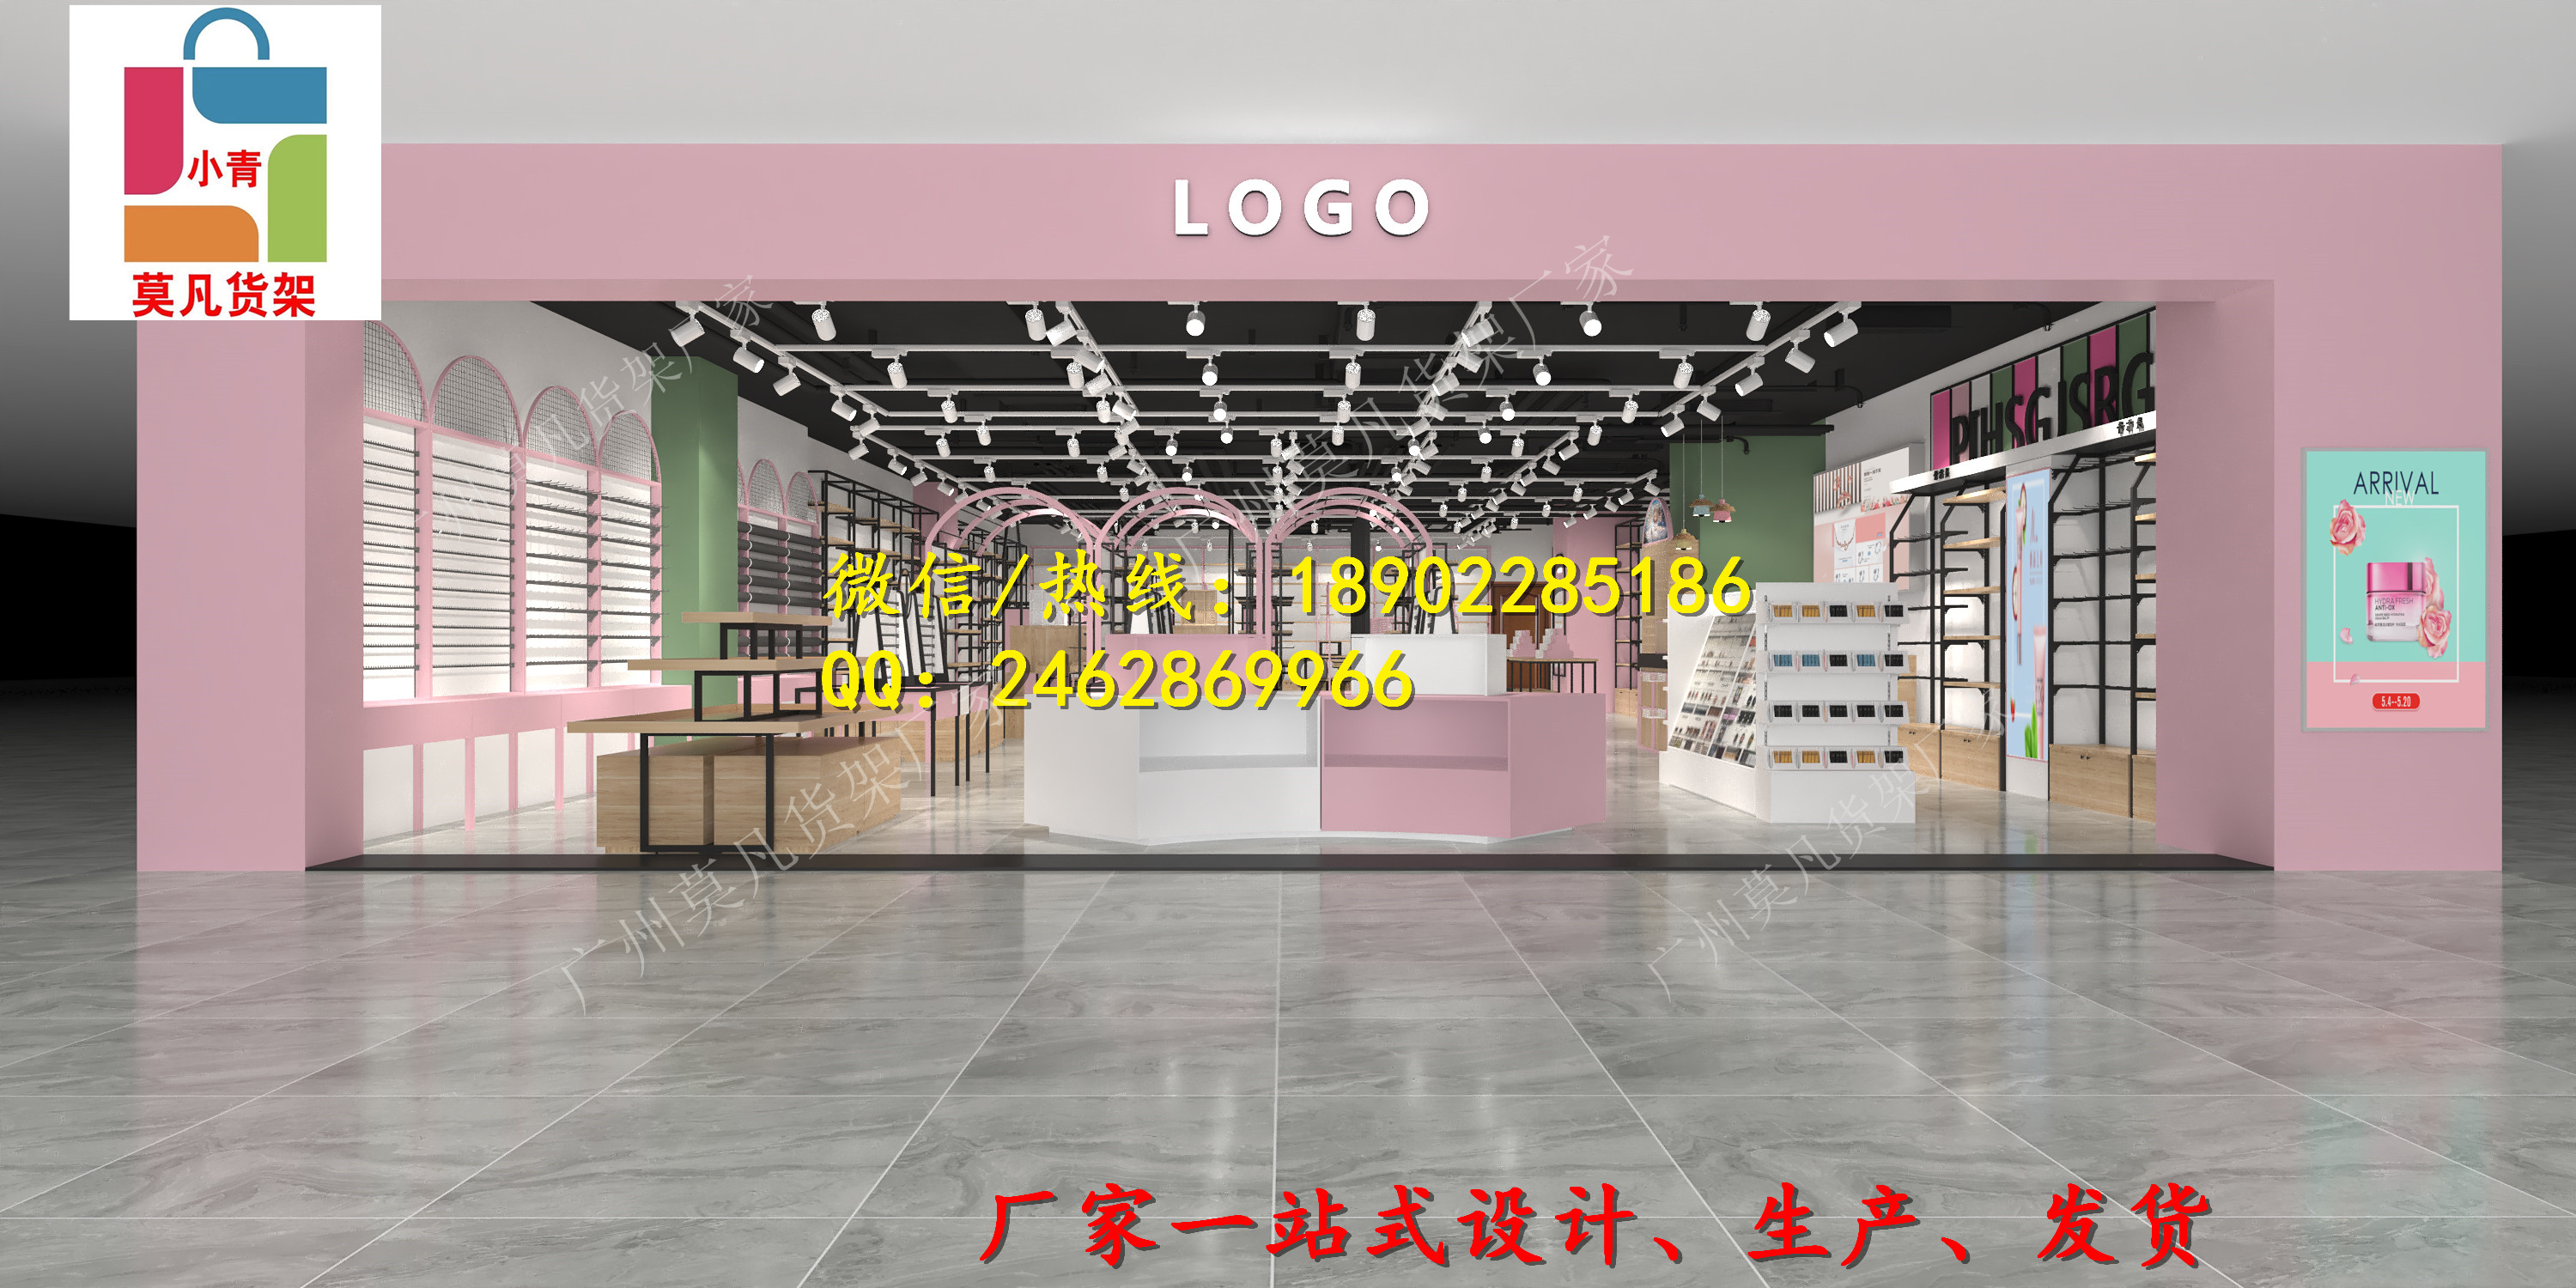 青岛kkv饰品店货架设计以亮黄色为主要视觉场景升级图片